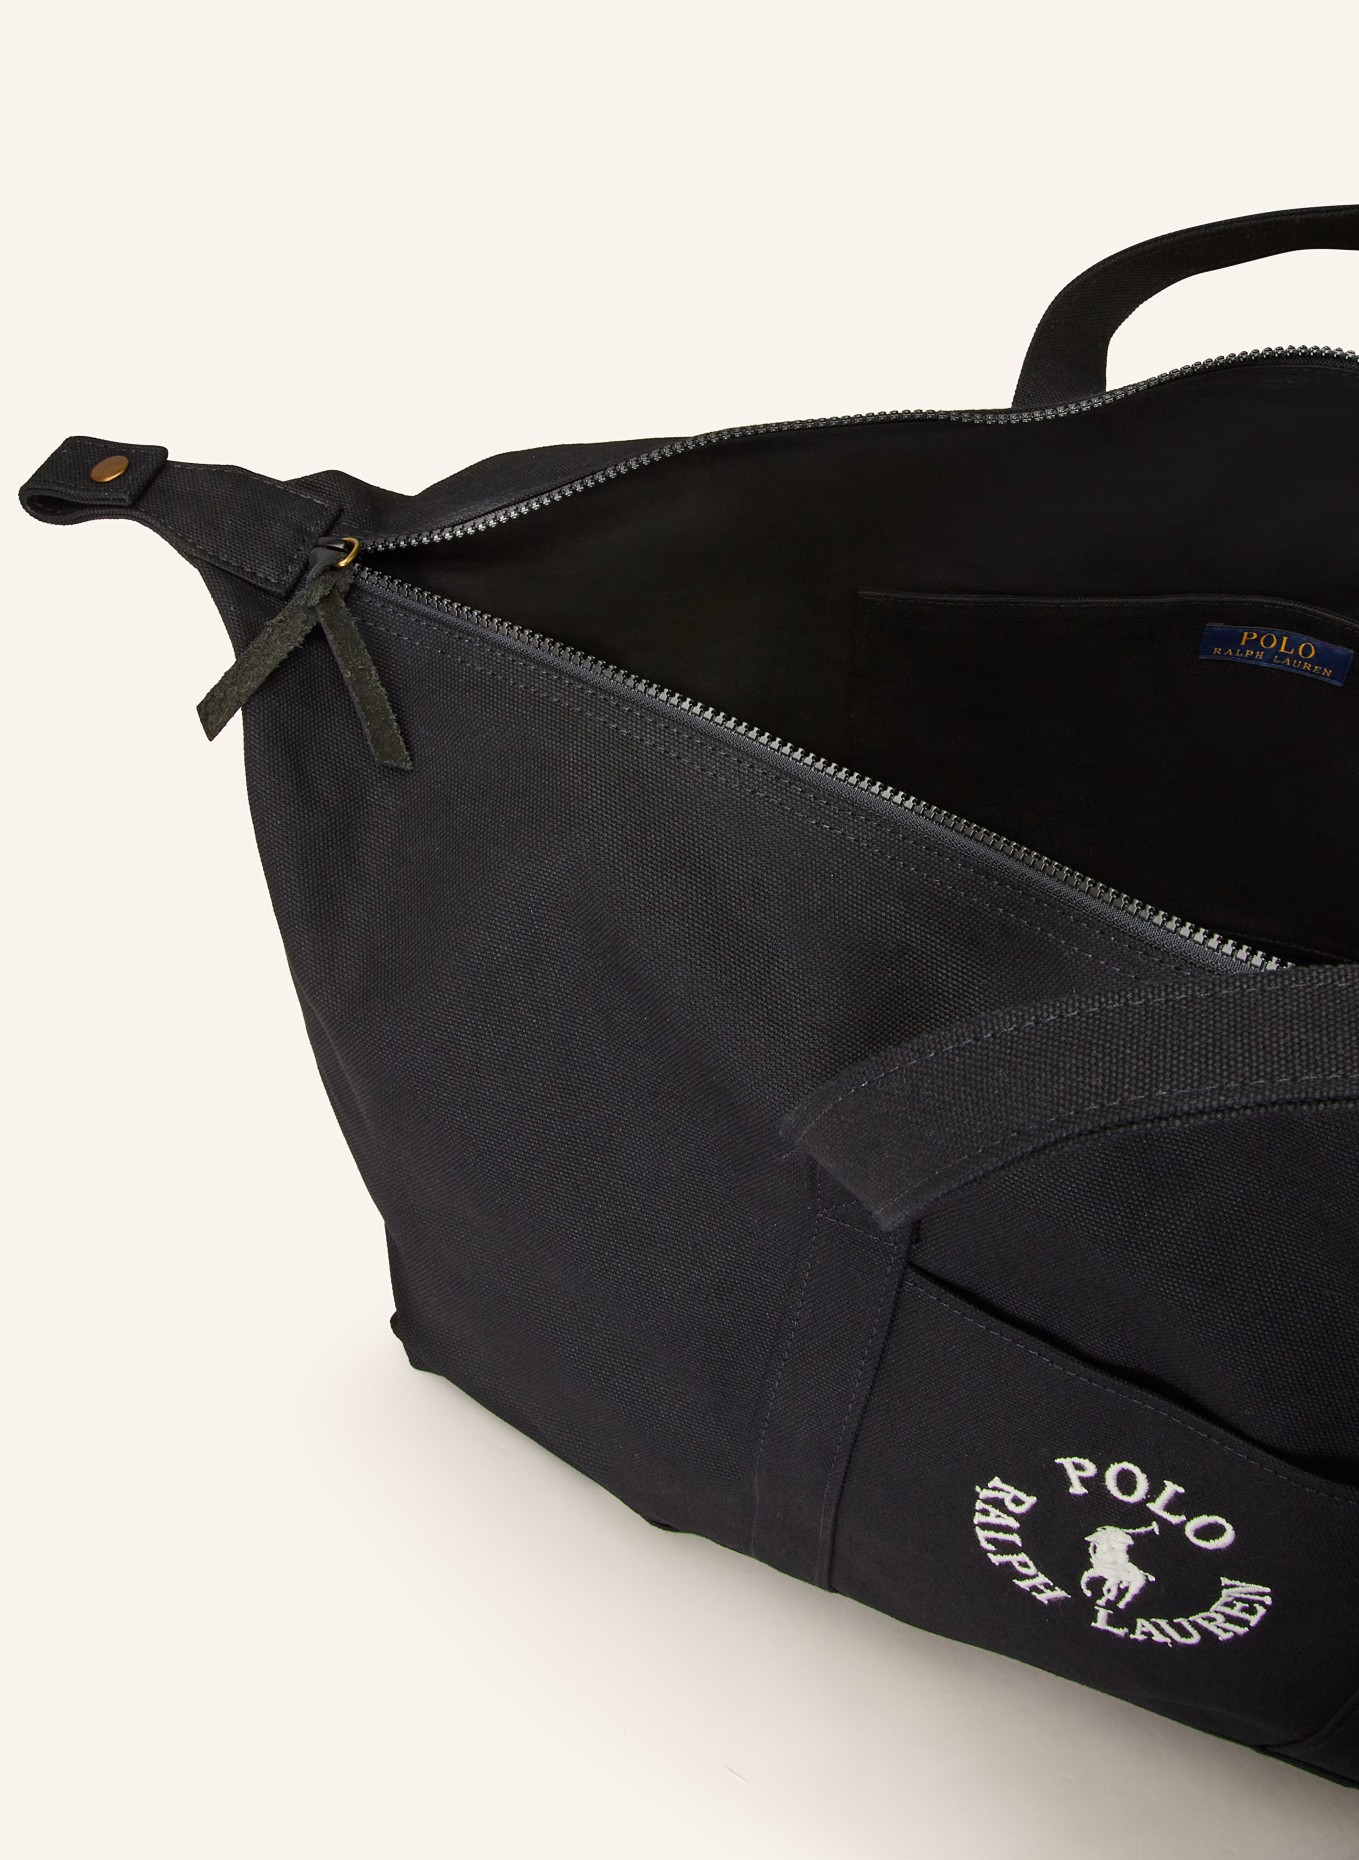 POLO RALPH LAUREN Travel bag, Color: BLACK (Image 3)